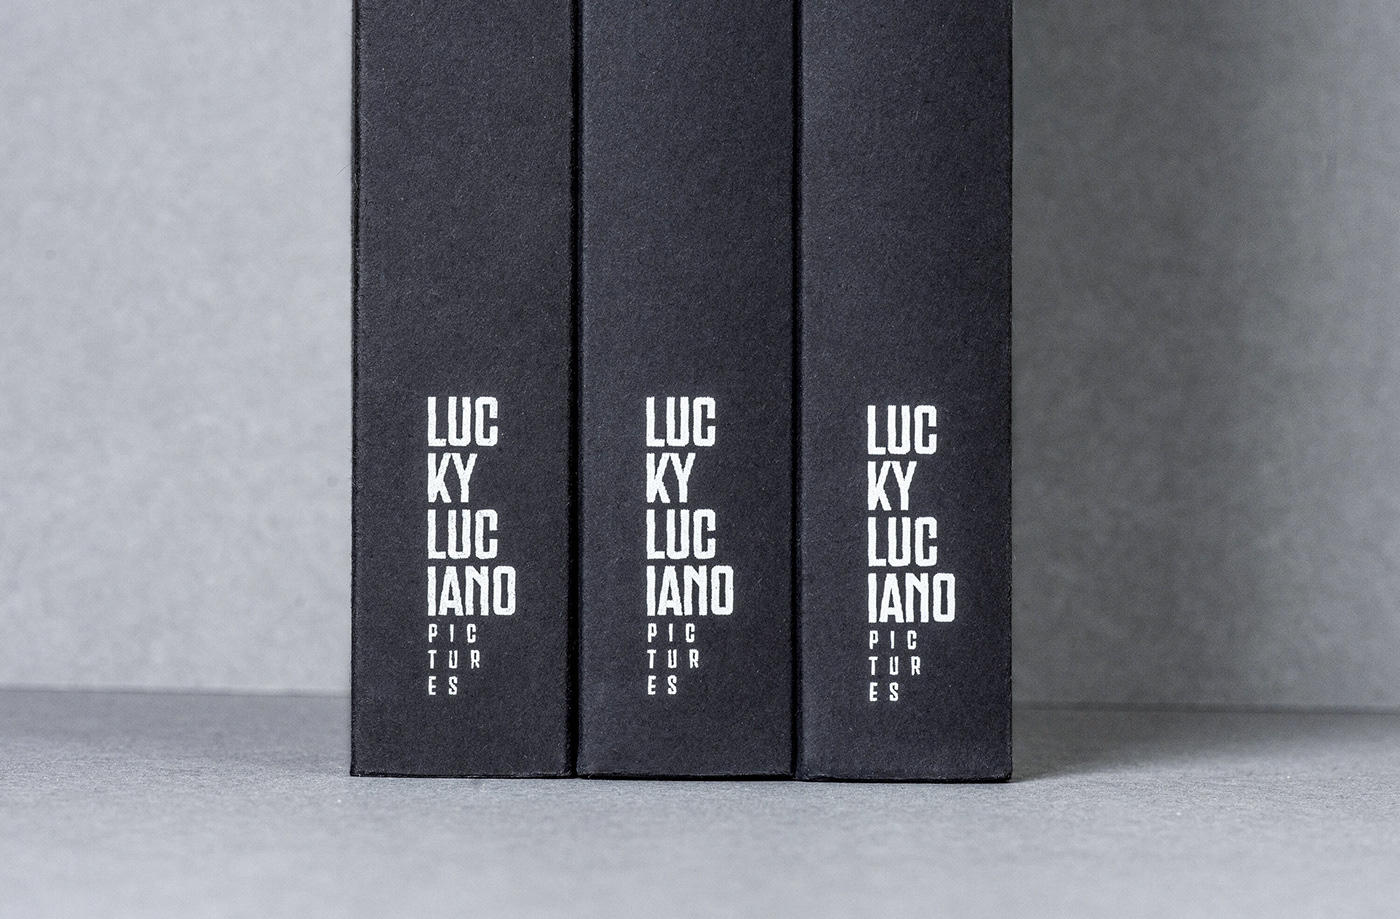 影视制作公司Lucky Luciano生产服务指南图书设计